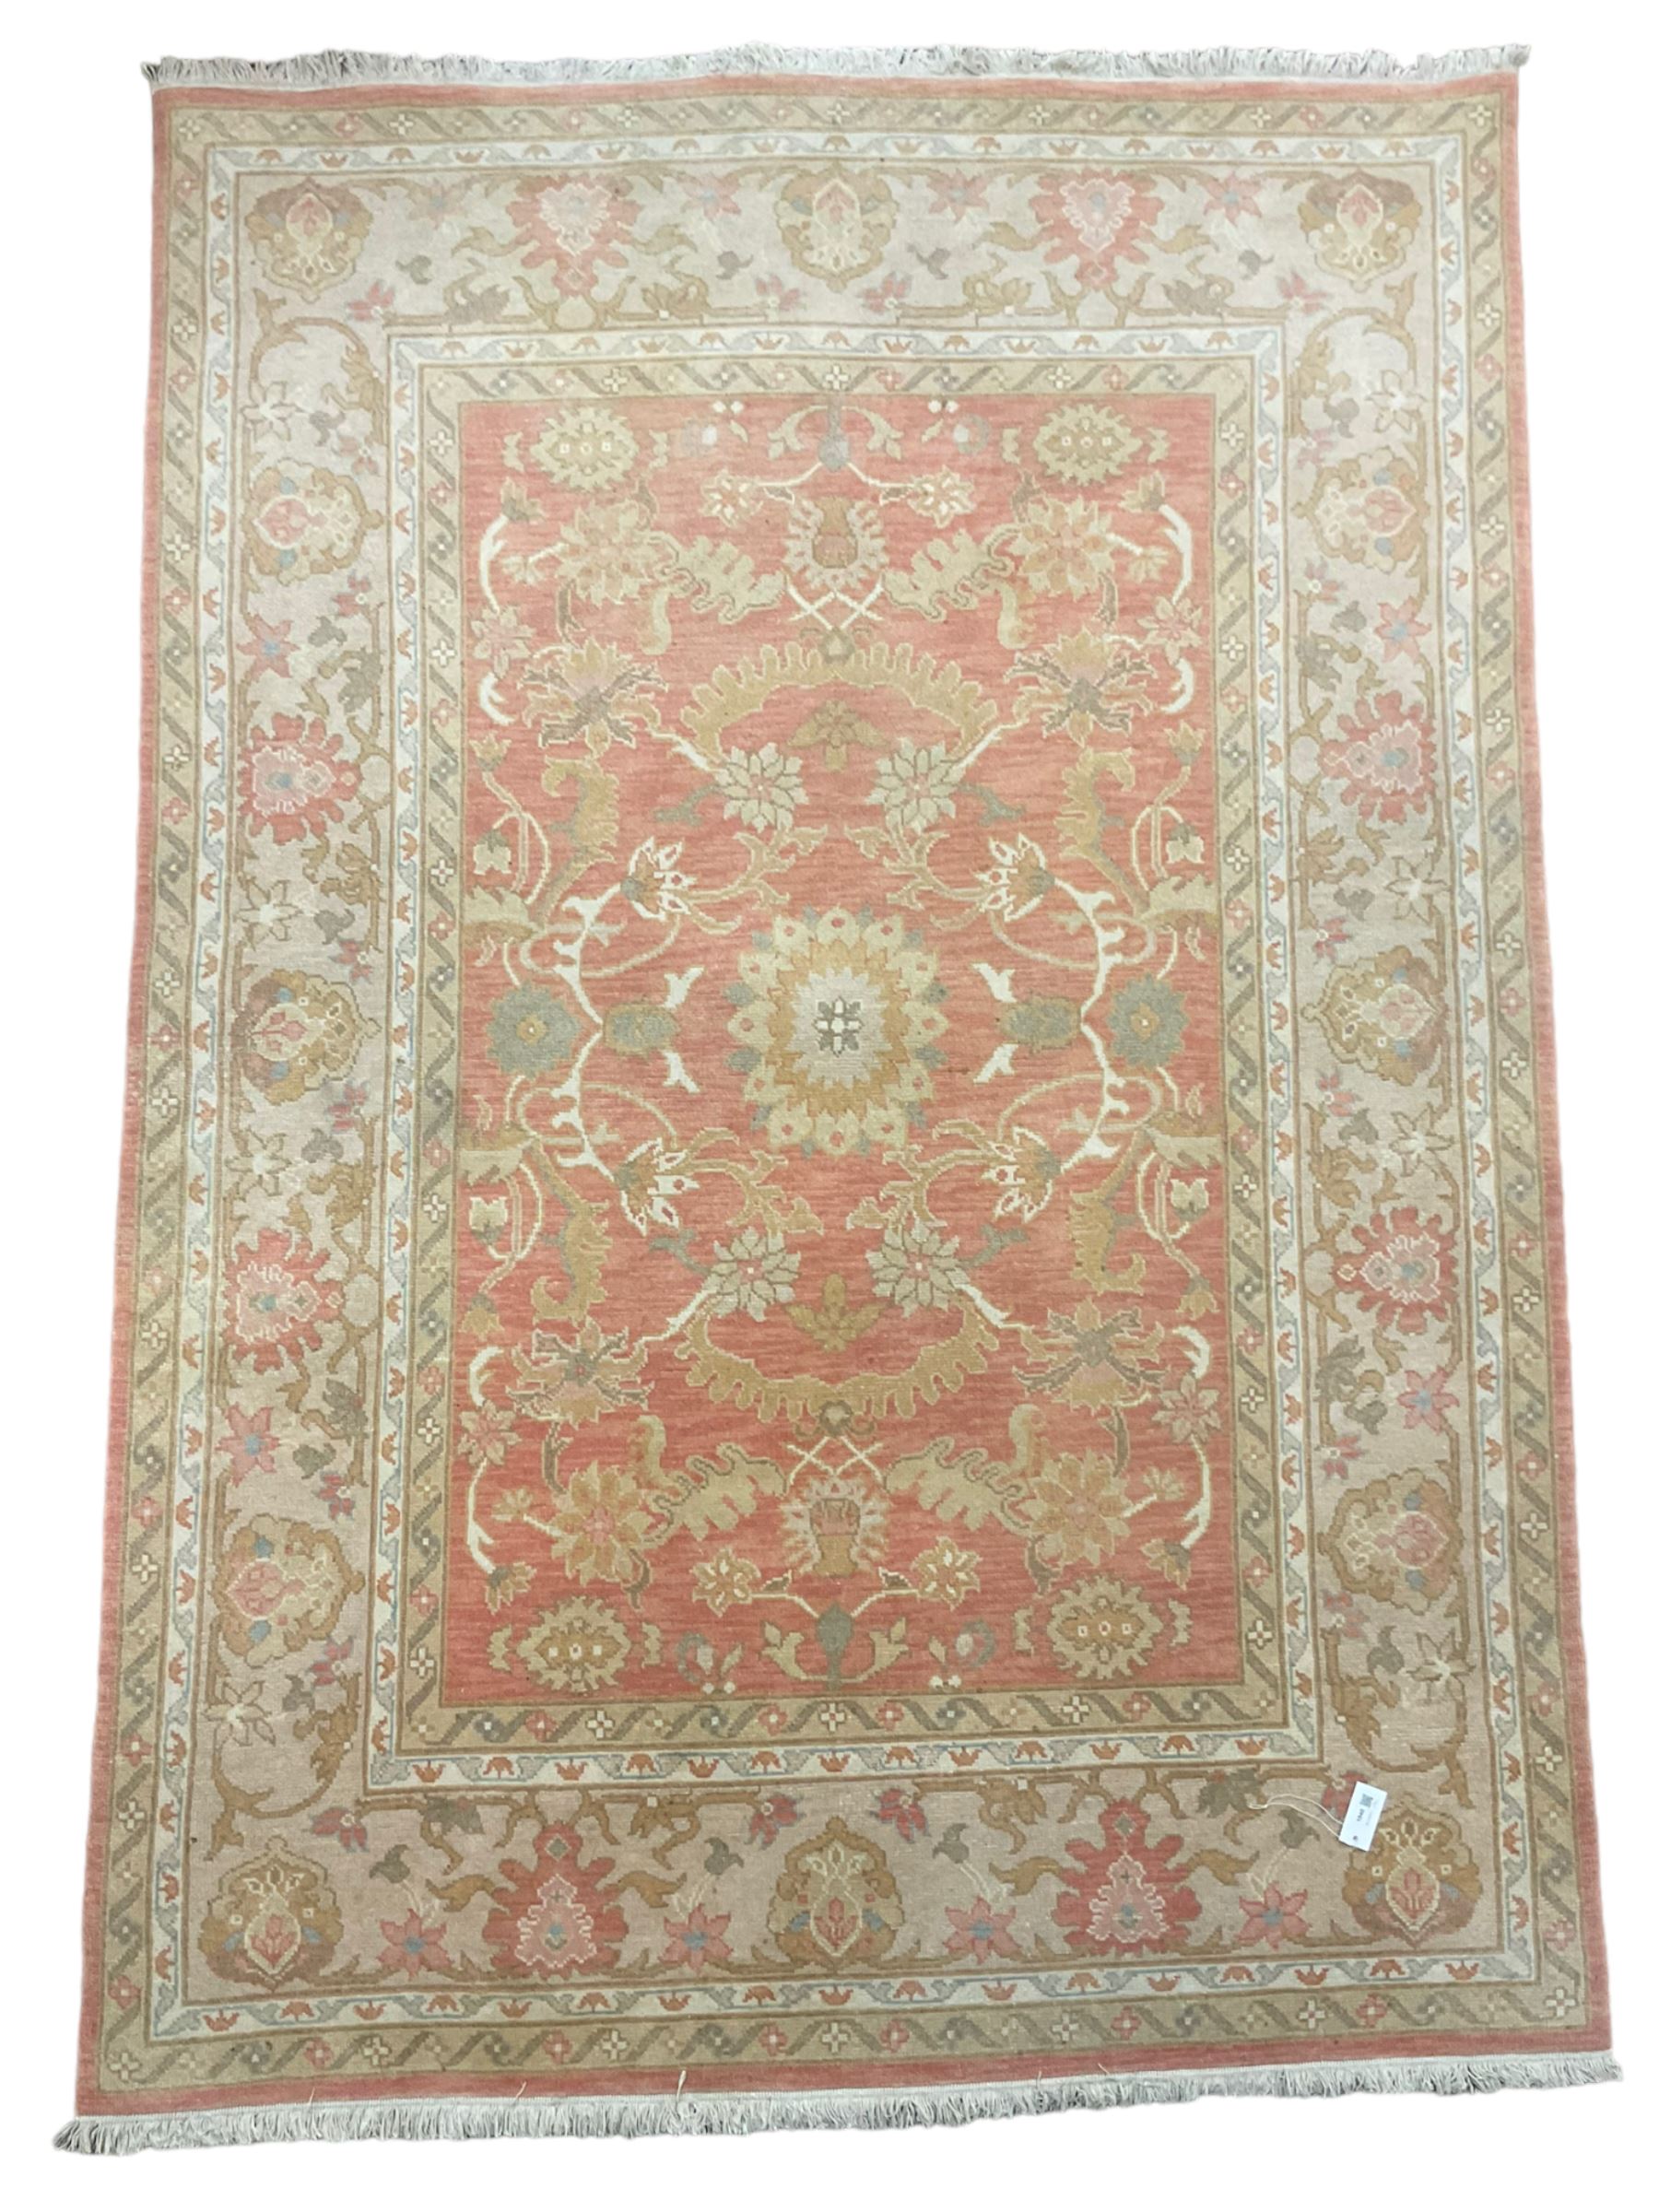 Persian Zeigler design rug